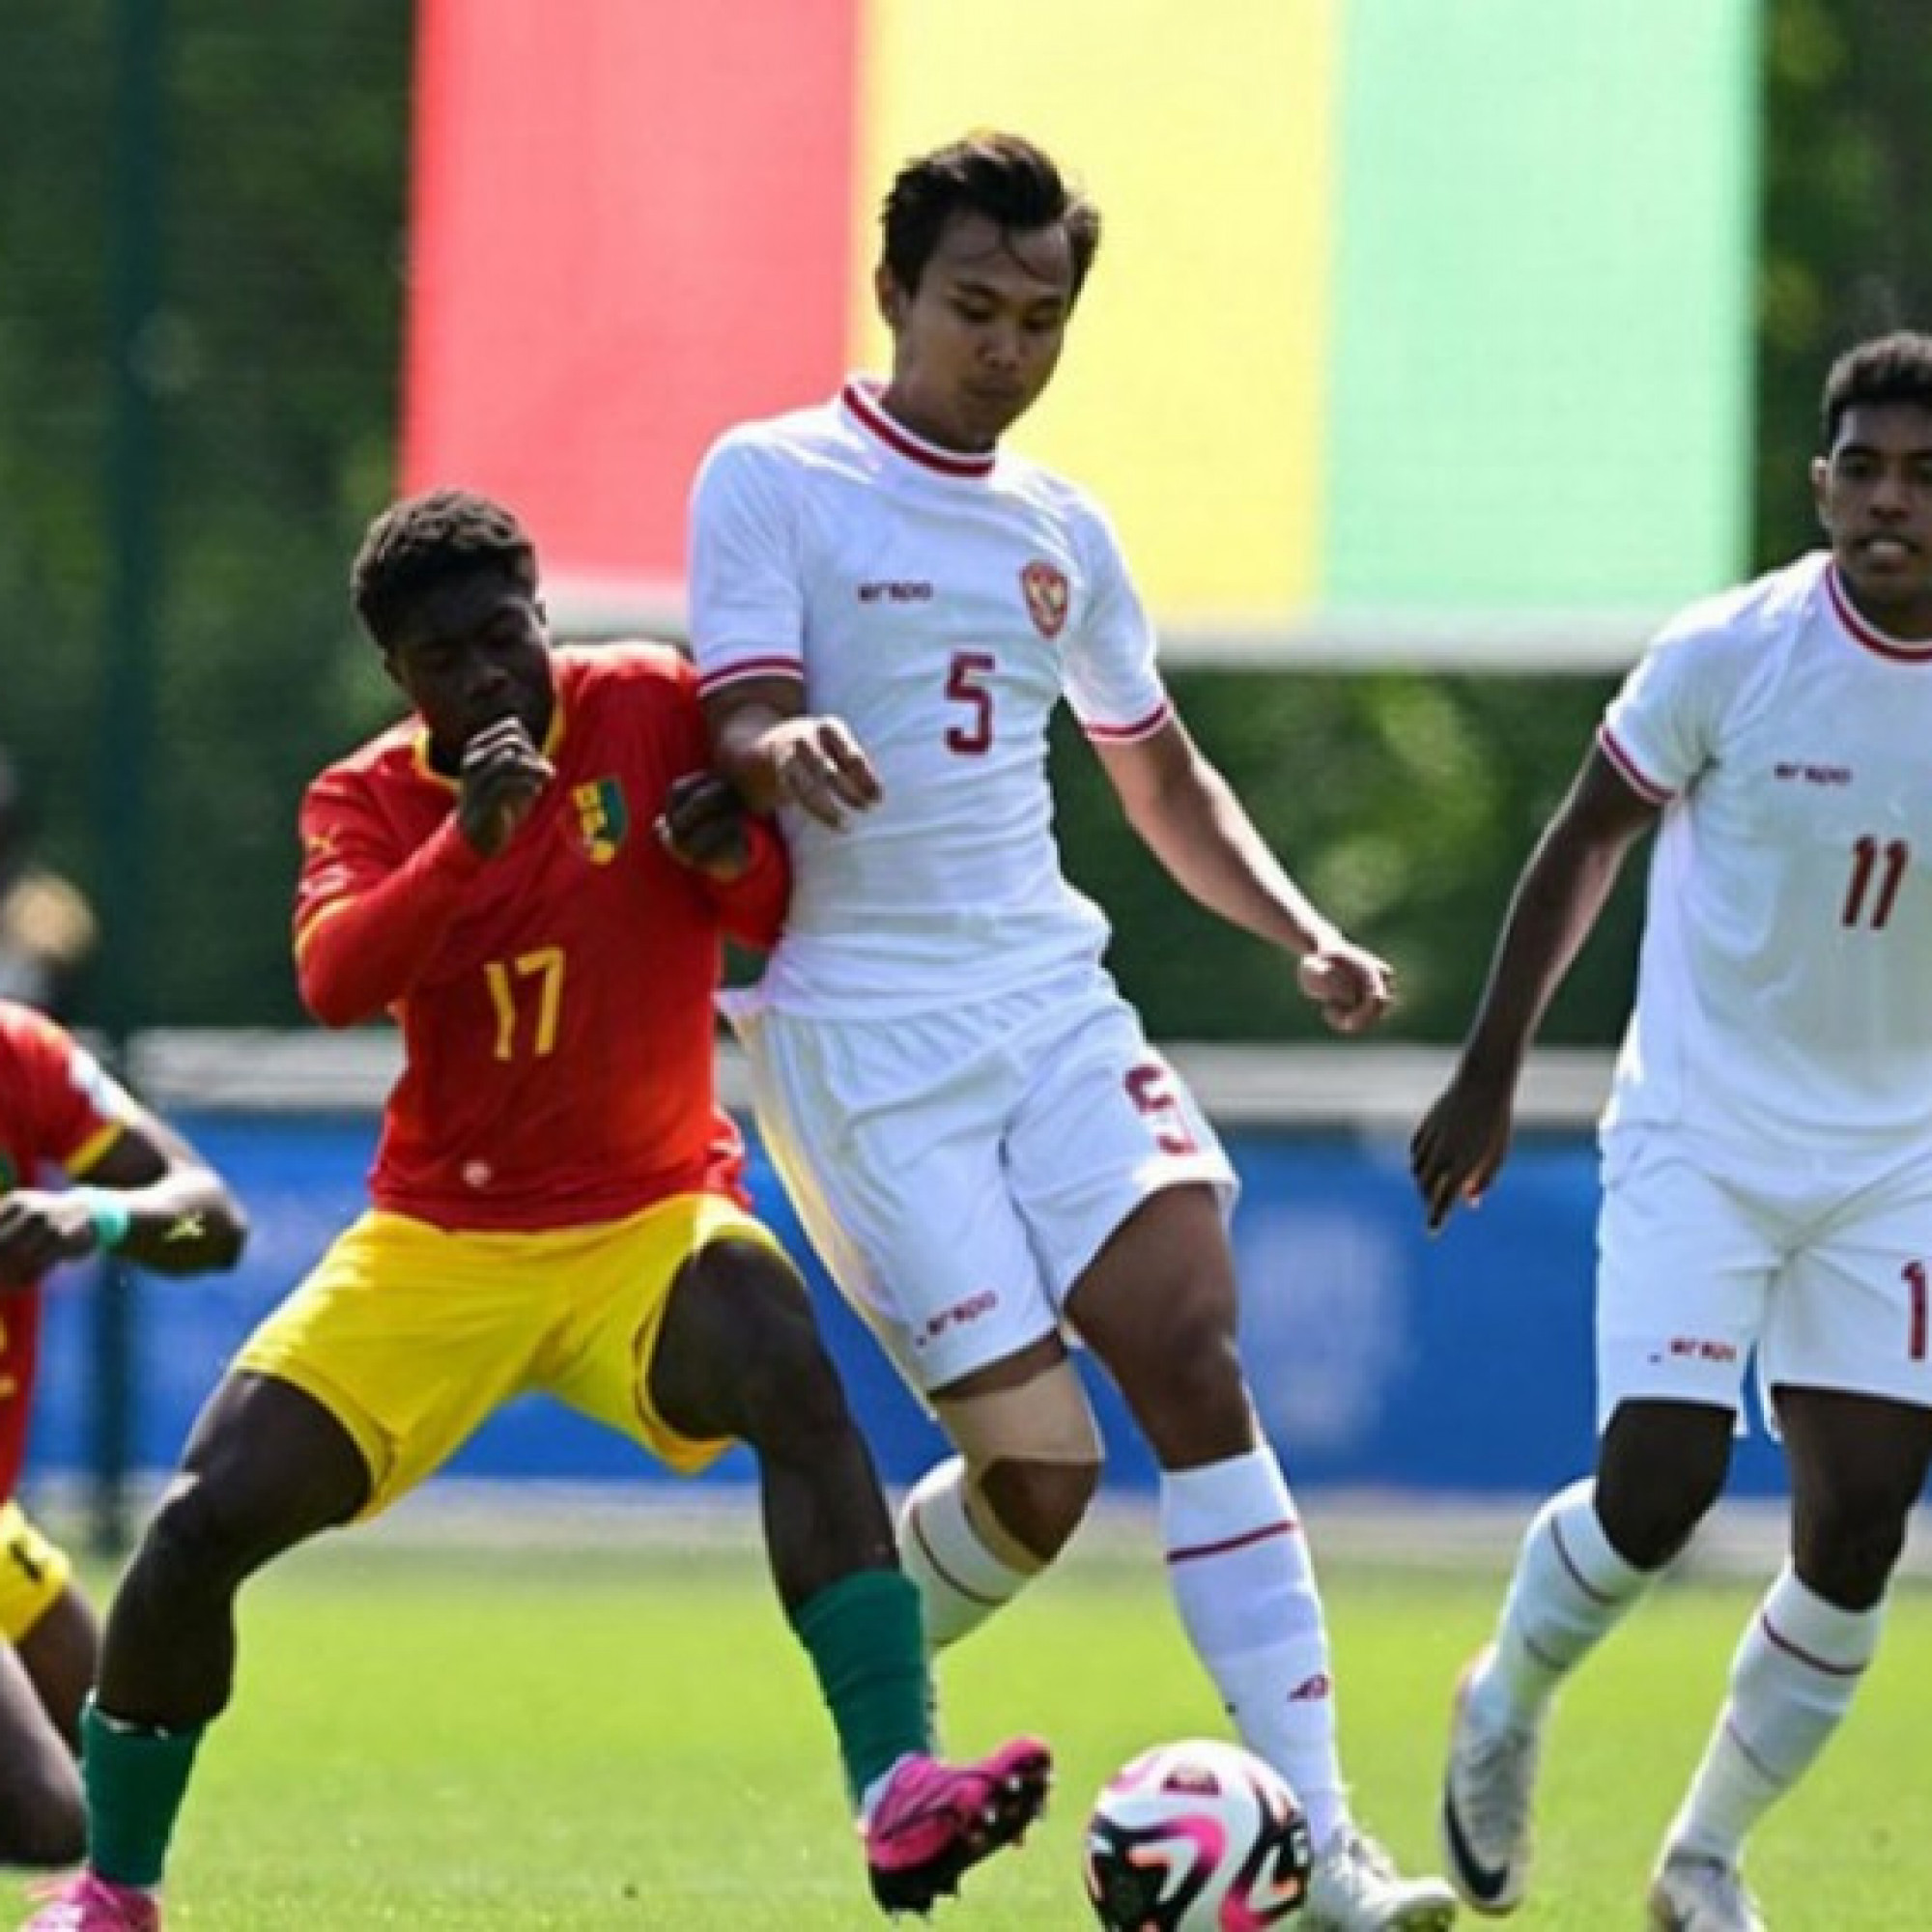  - Trực tiếp bóng đá U23 Indonesia - U23 Guinea: Đội bóng châu Phi vượt lên (Play-off Olympic)